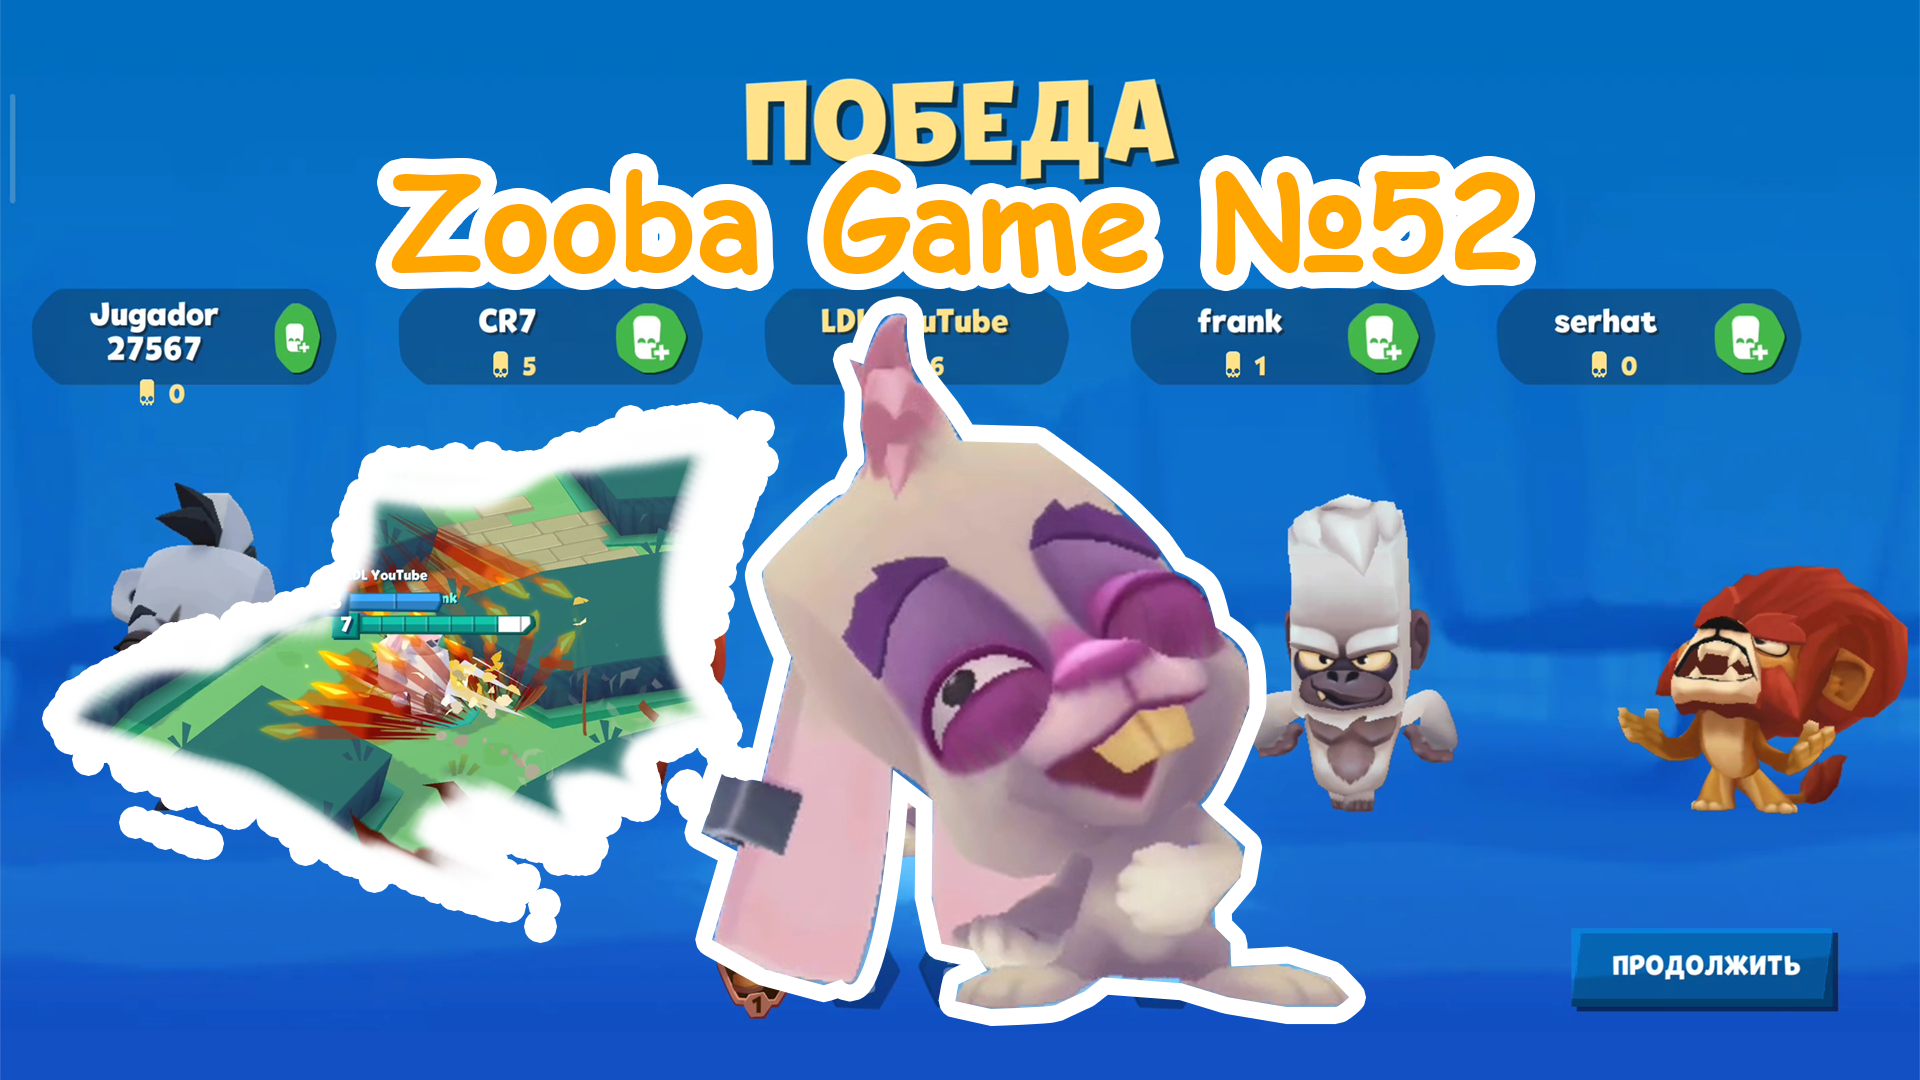 Zooba Game #52 #zooba